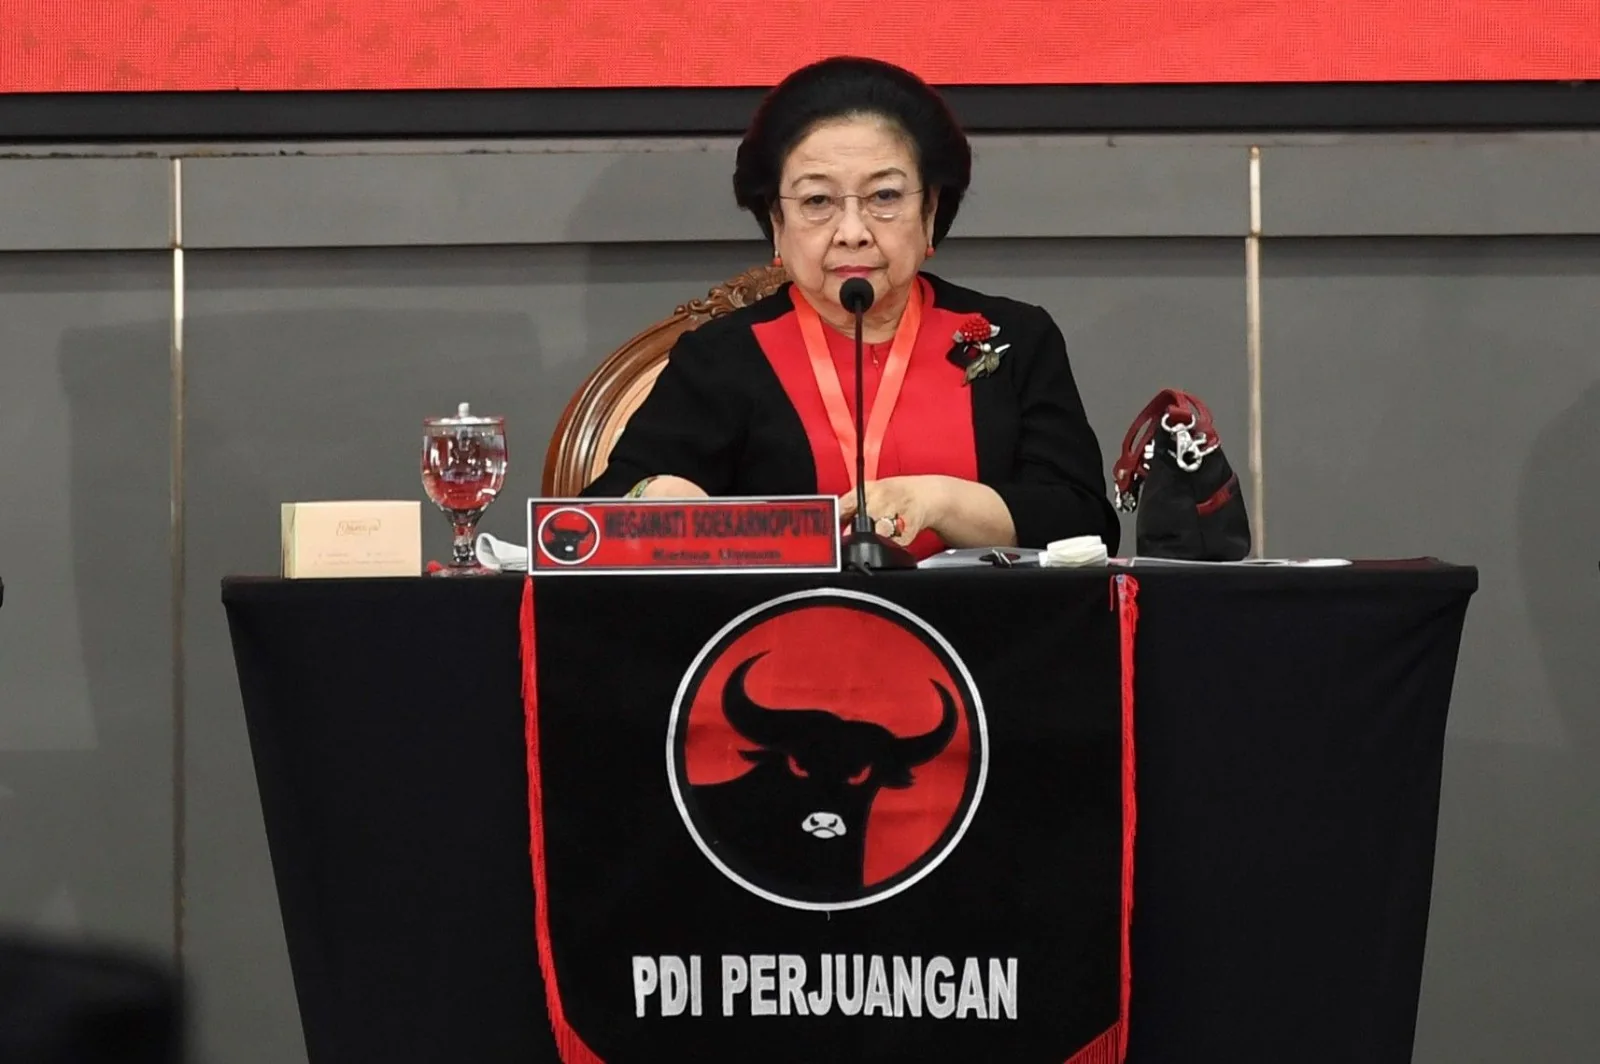 Sekjen DPP PDIP Hasto Kristiyanto menegaskan keputusan pengumuman capres akan disampaikan oleh Ketum, Megawati Soekarnoputri. pdiperjuangan.id